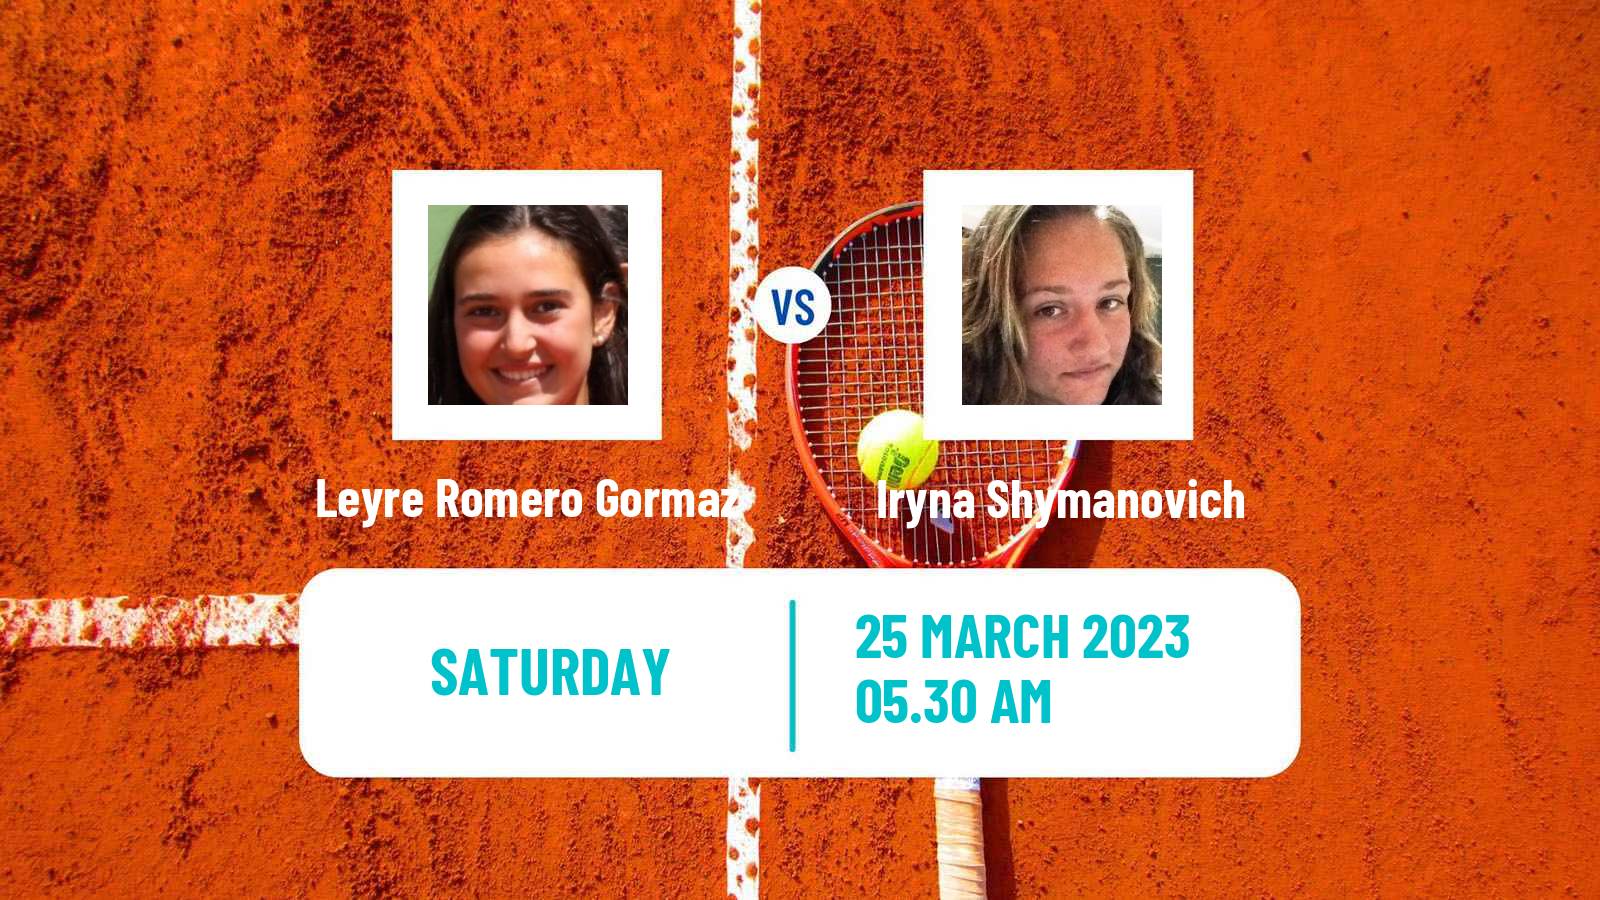 Tennis ITF Tournaments Leyre Romero Gormaz - Iryna Shymanovich